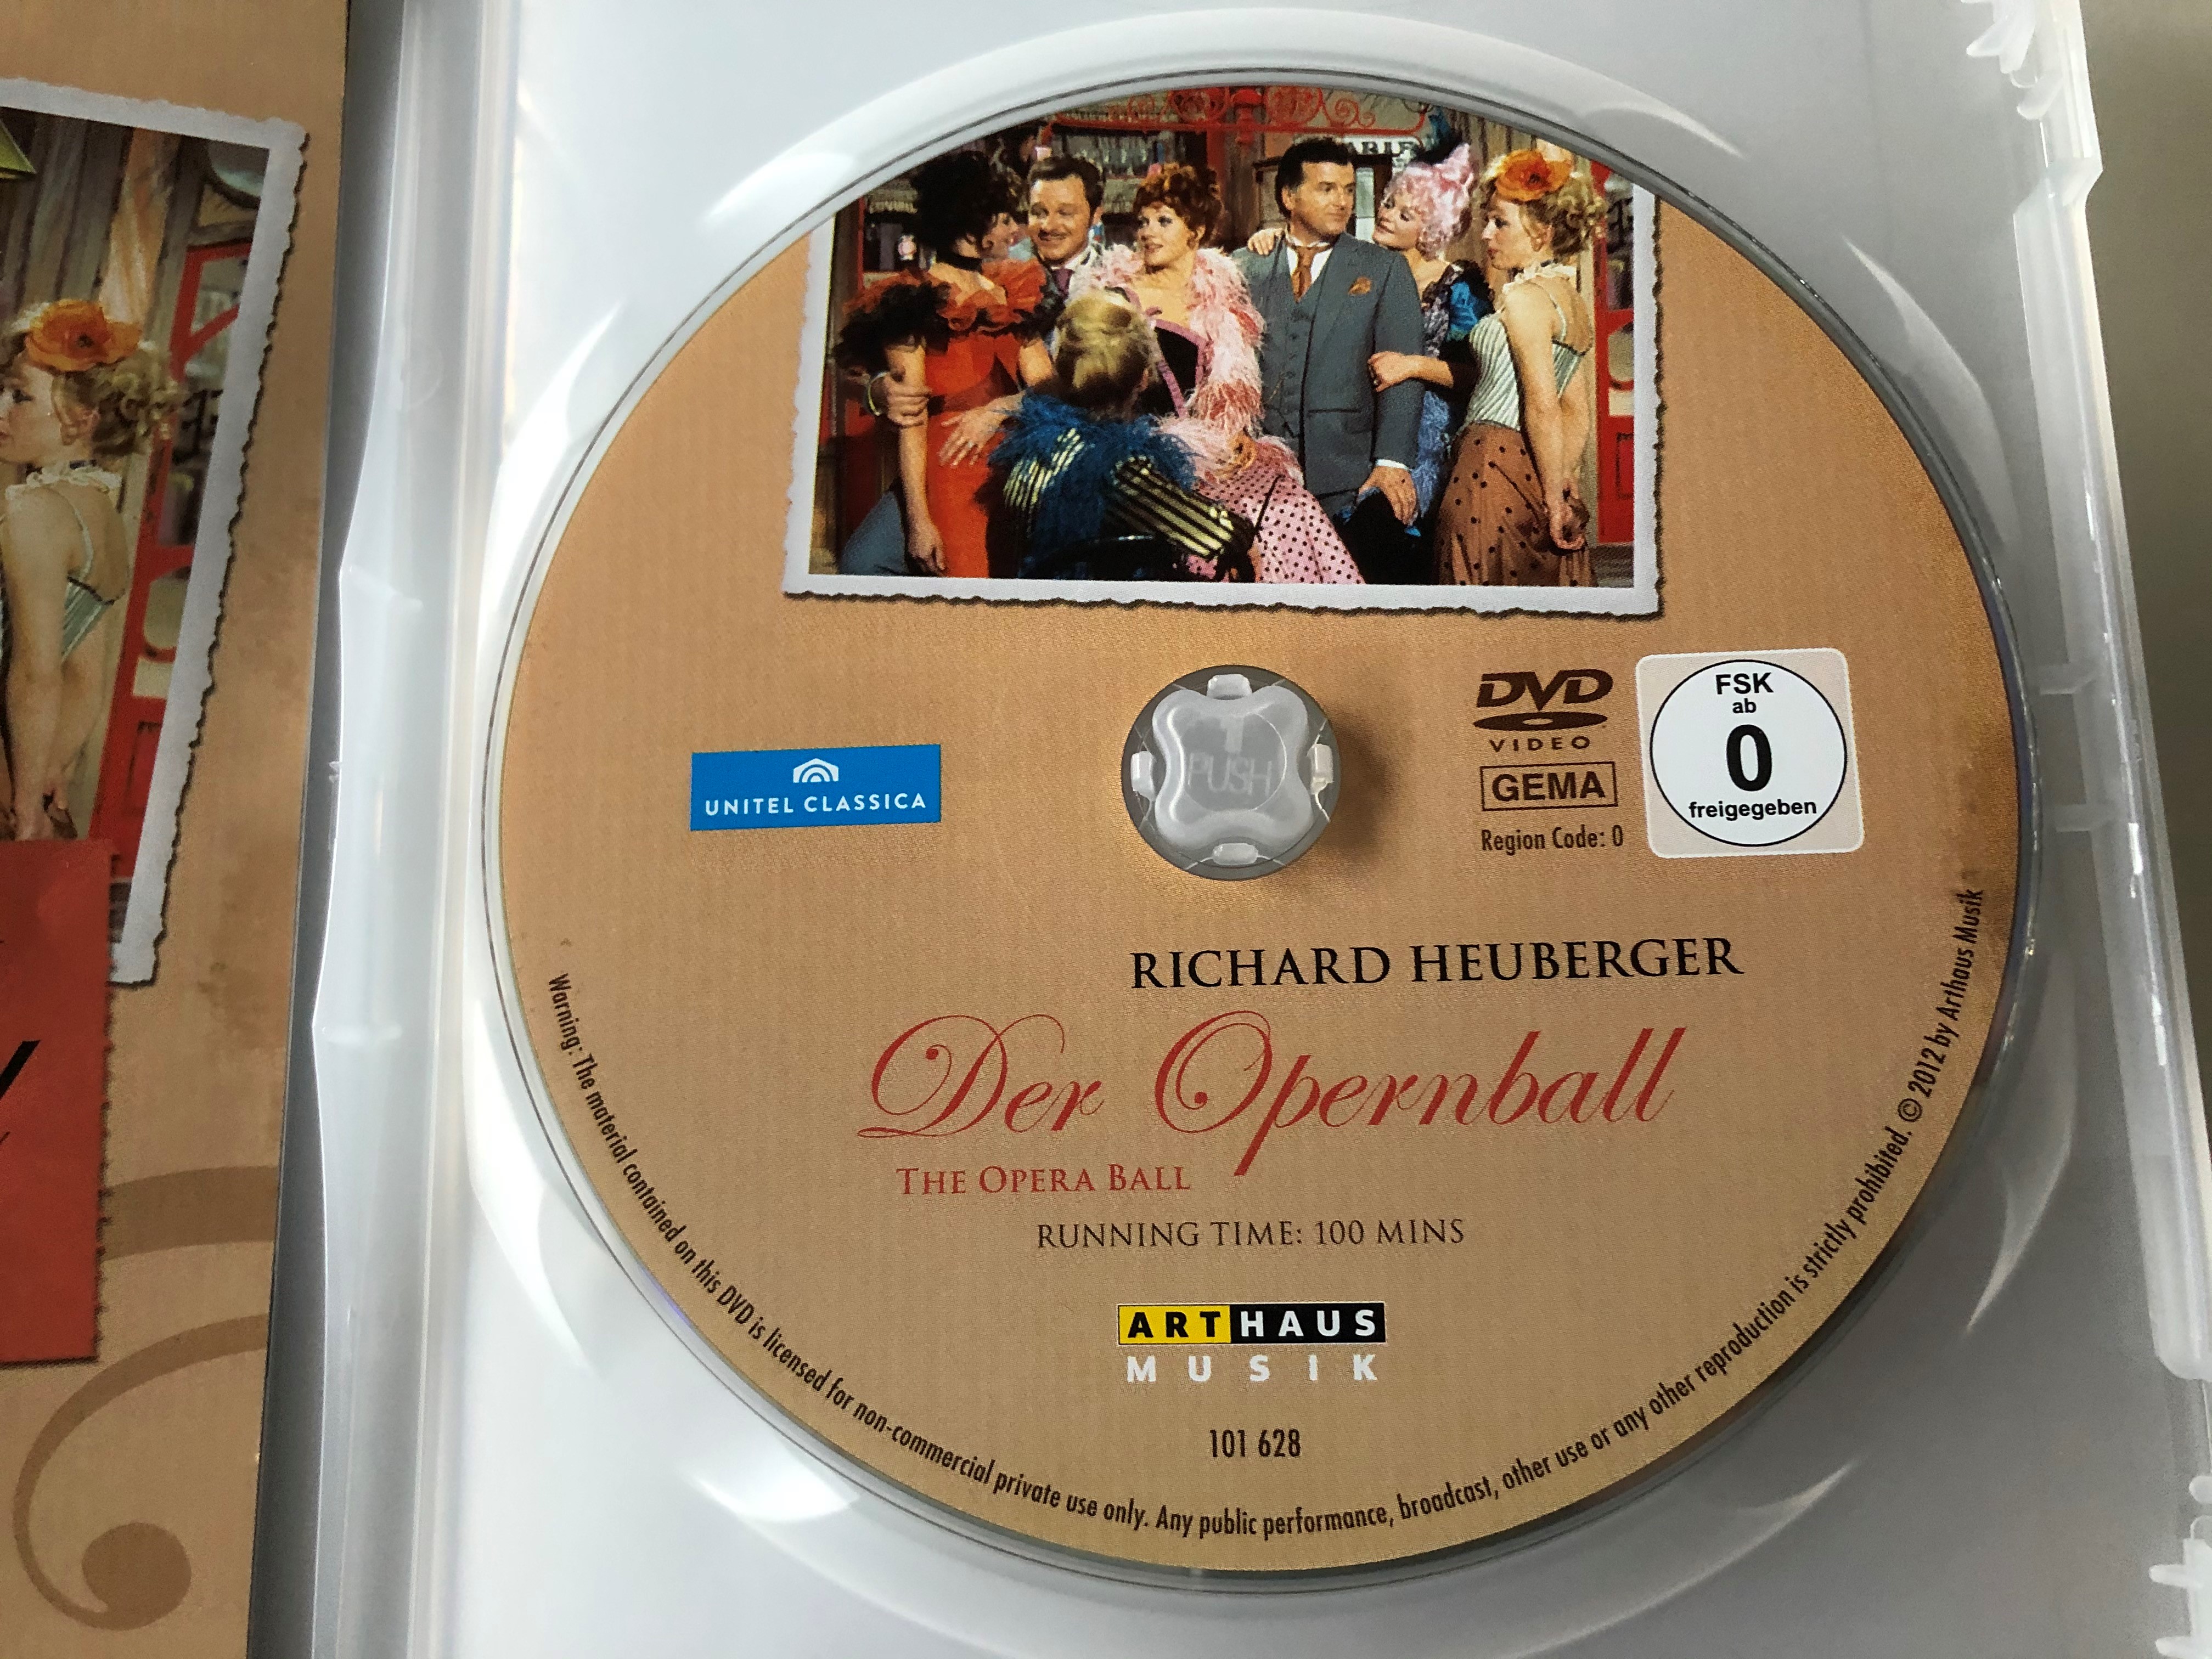 the-opera-ball-dvd-1970-richard-heuberger-der-opernball-3.jpg